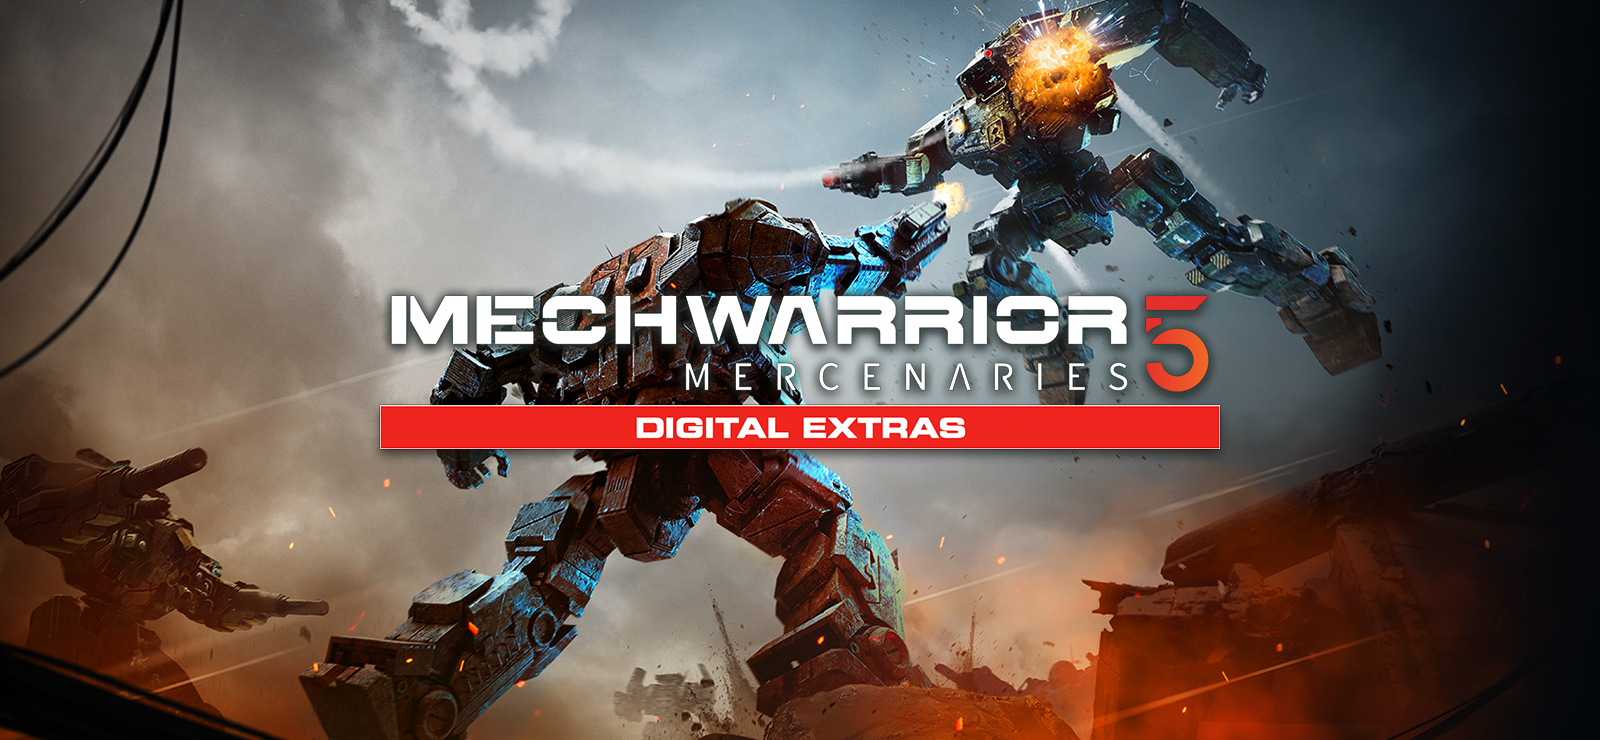 MechWarrior 5 Mercenaries - Digital Content